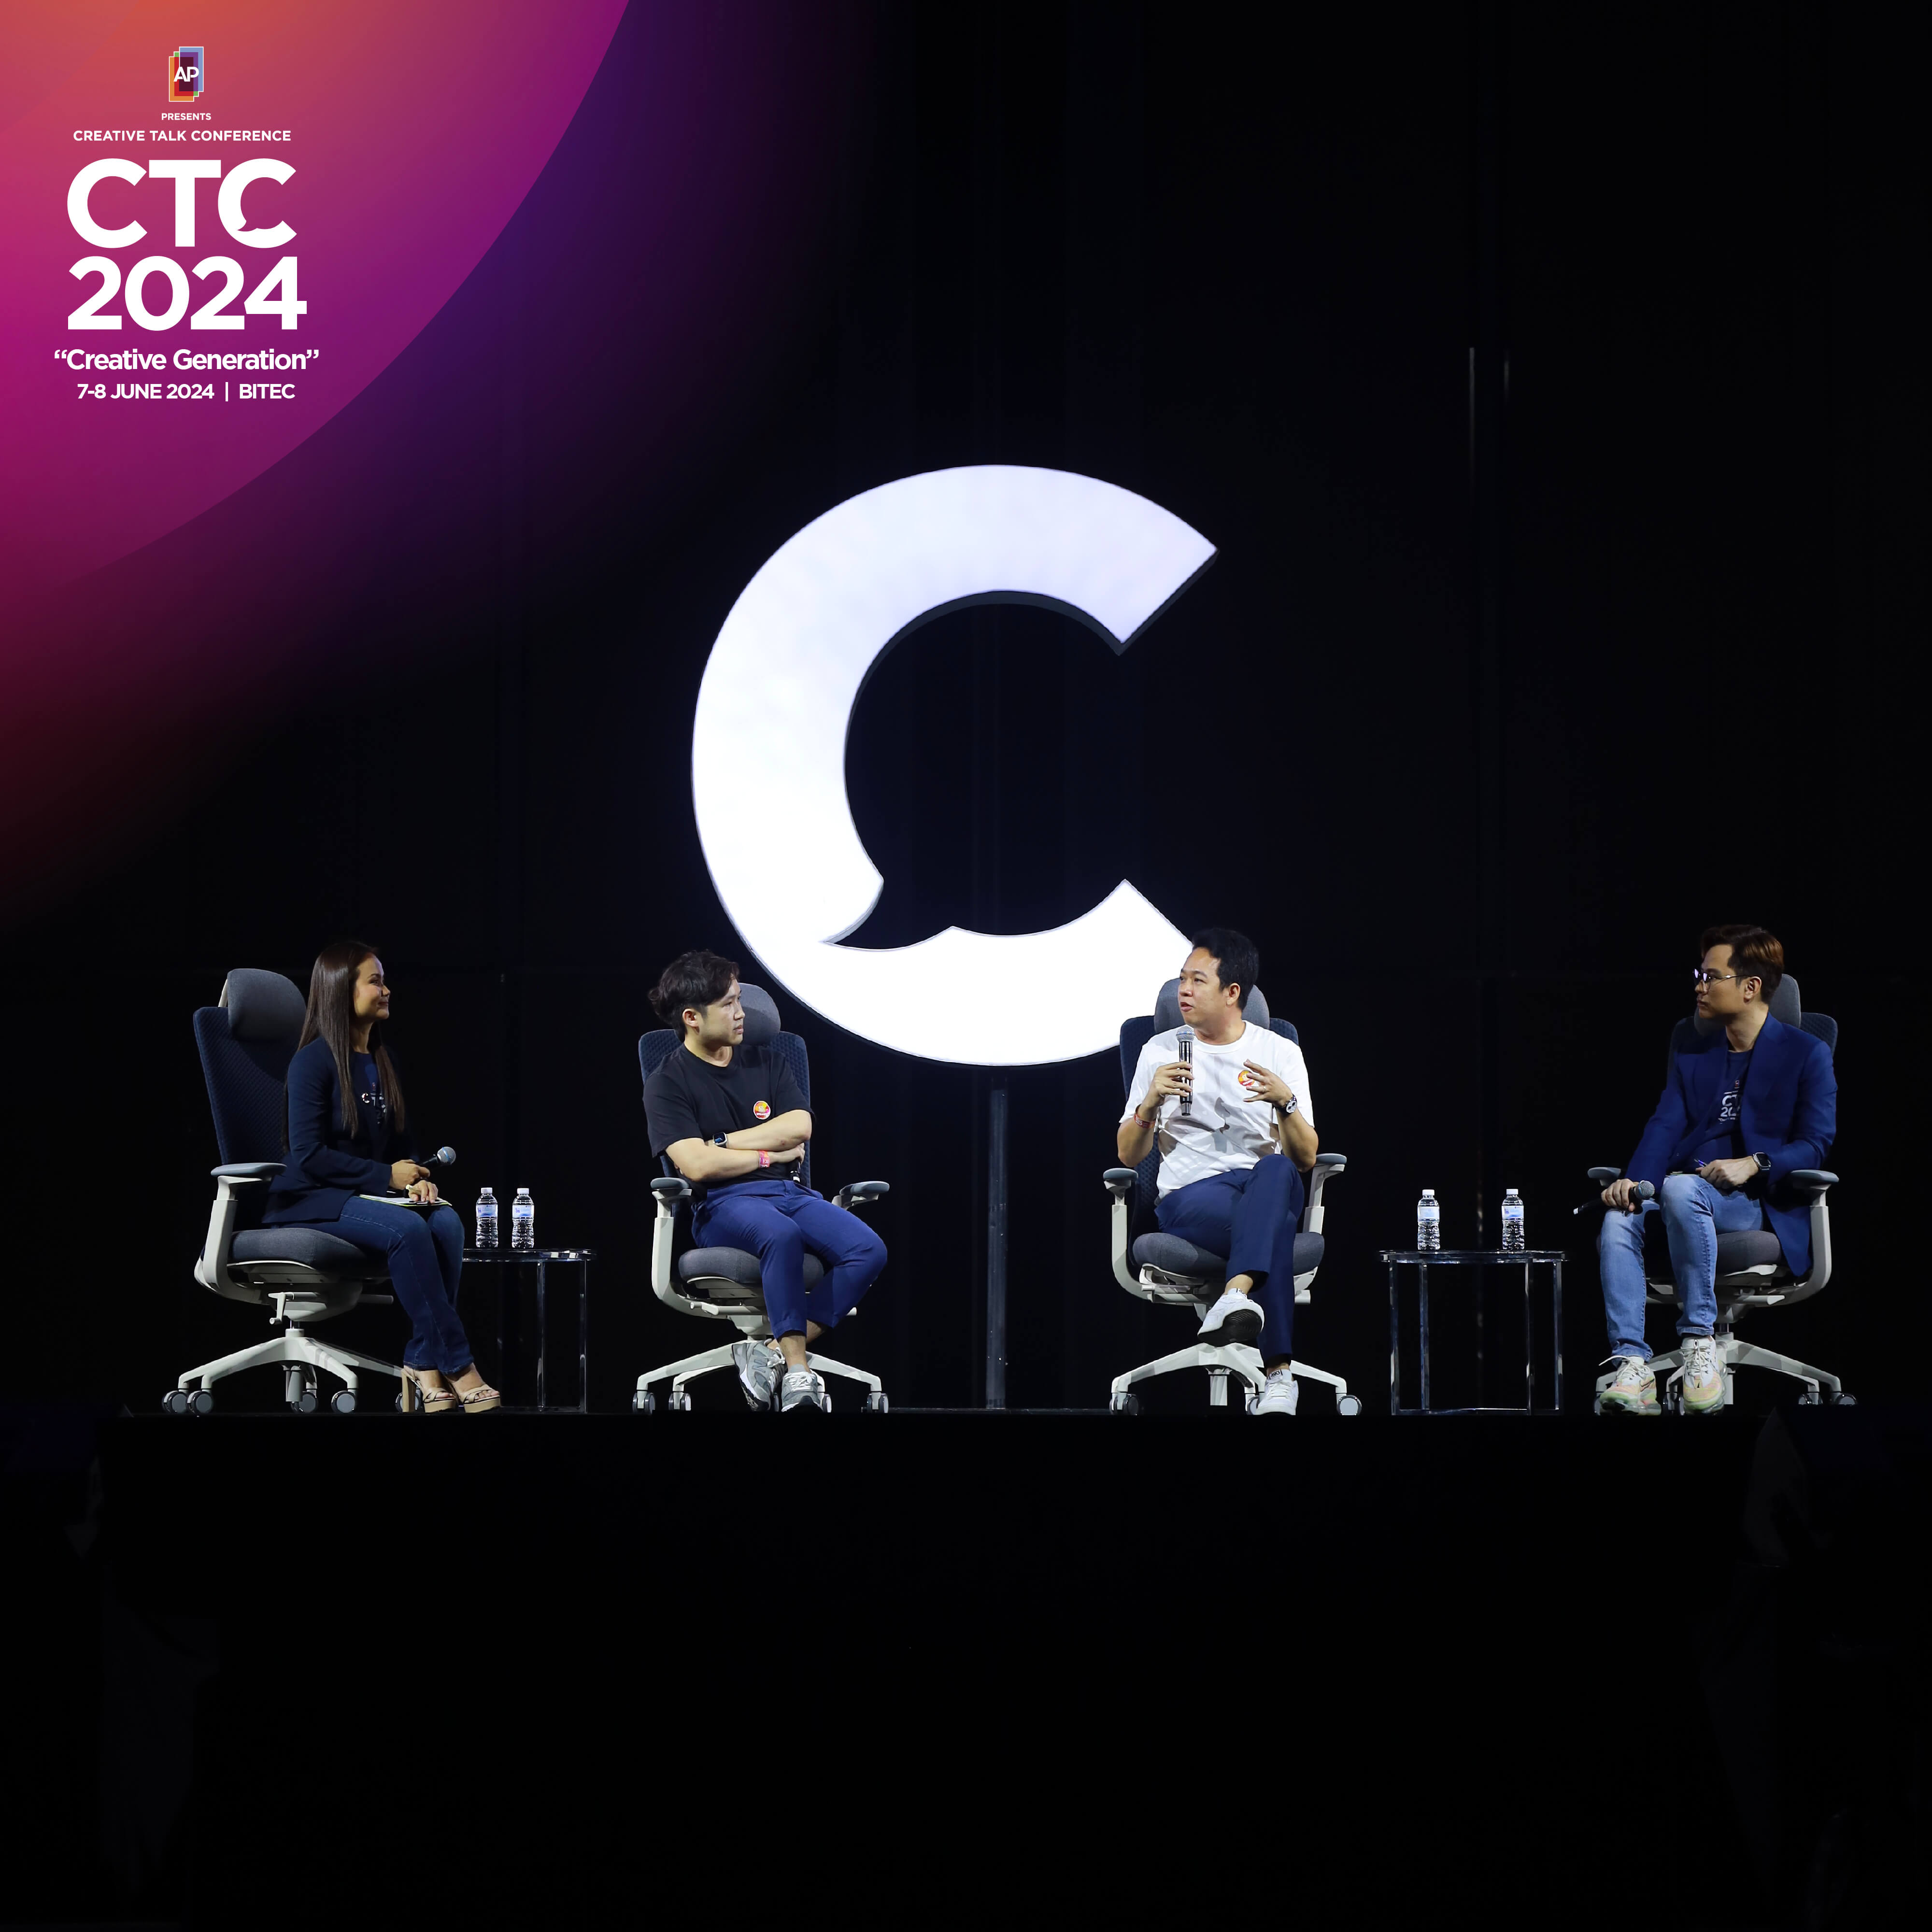 รวมไฮไลท์งาน Creative Talk Conference 2024 รวมพลกลุ่มคนสร้างสรรค์ เพื่อโอกาสของทางเลือกที่ดีกว่า